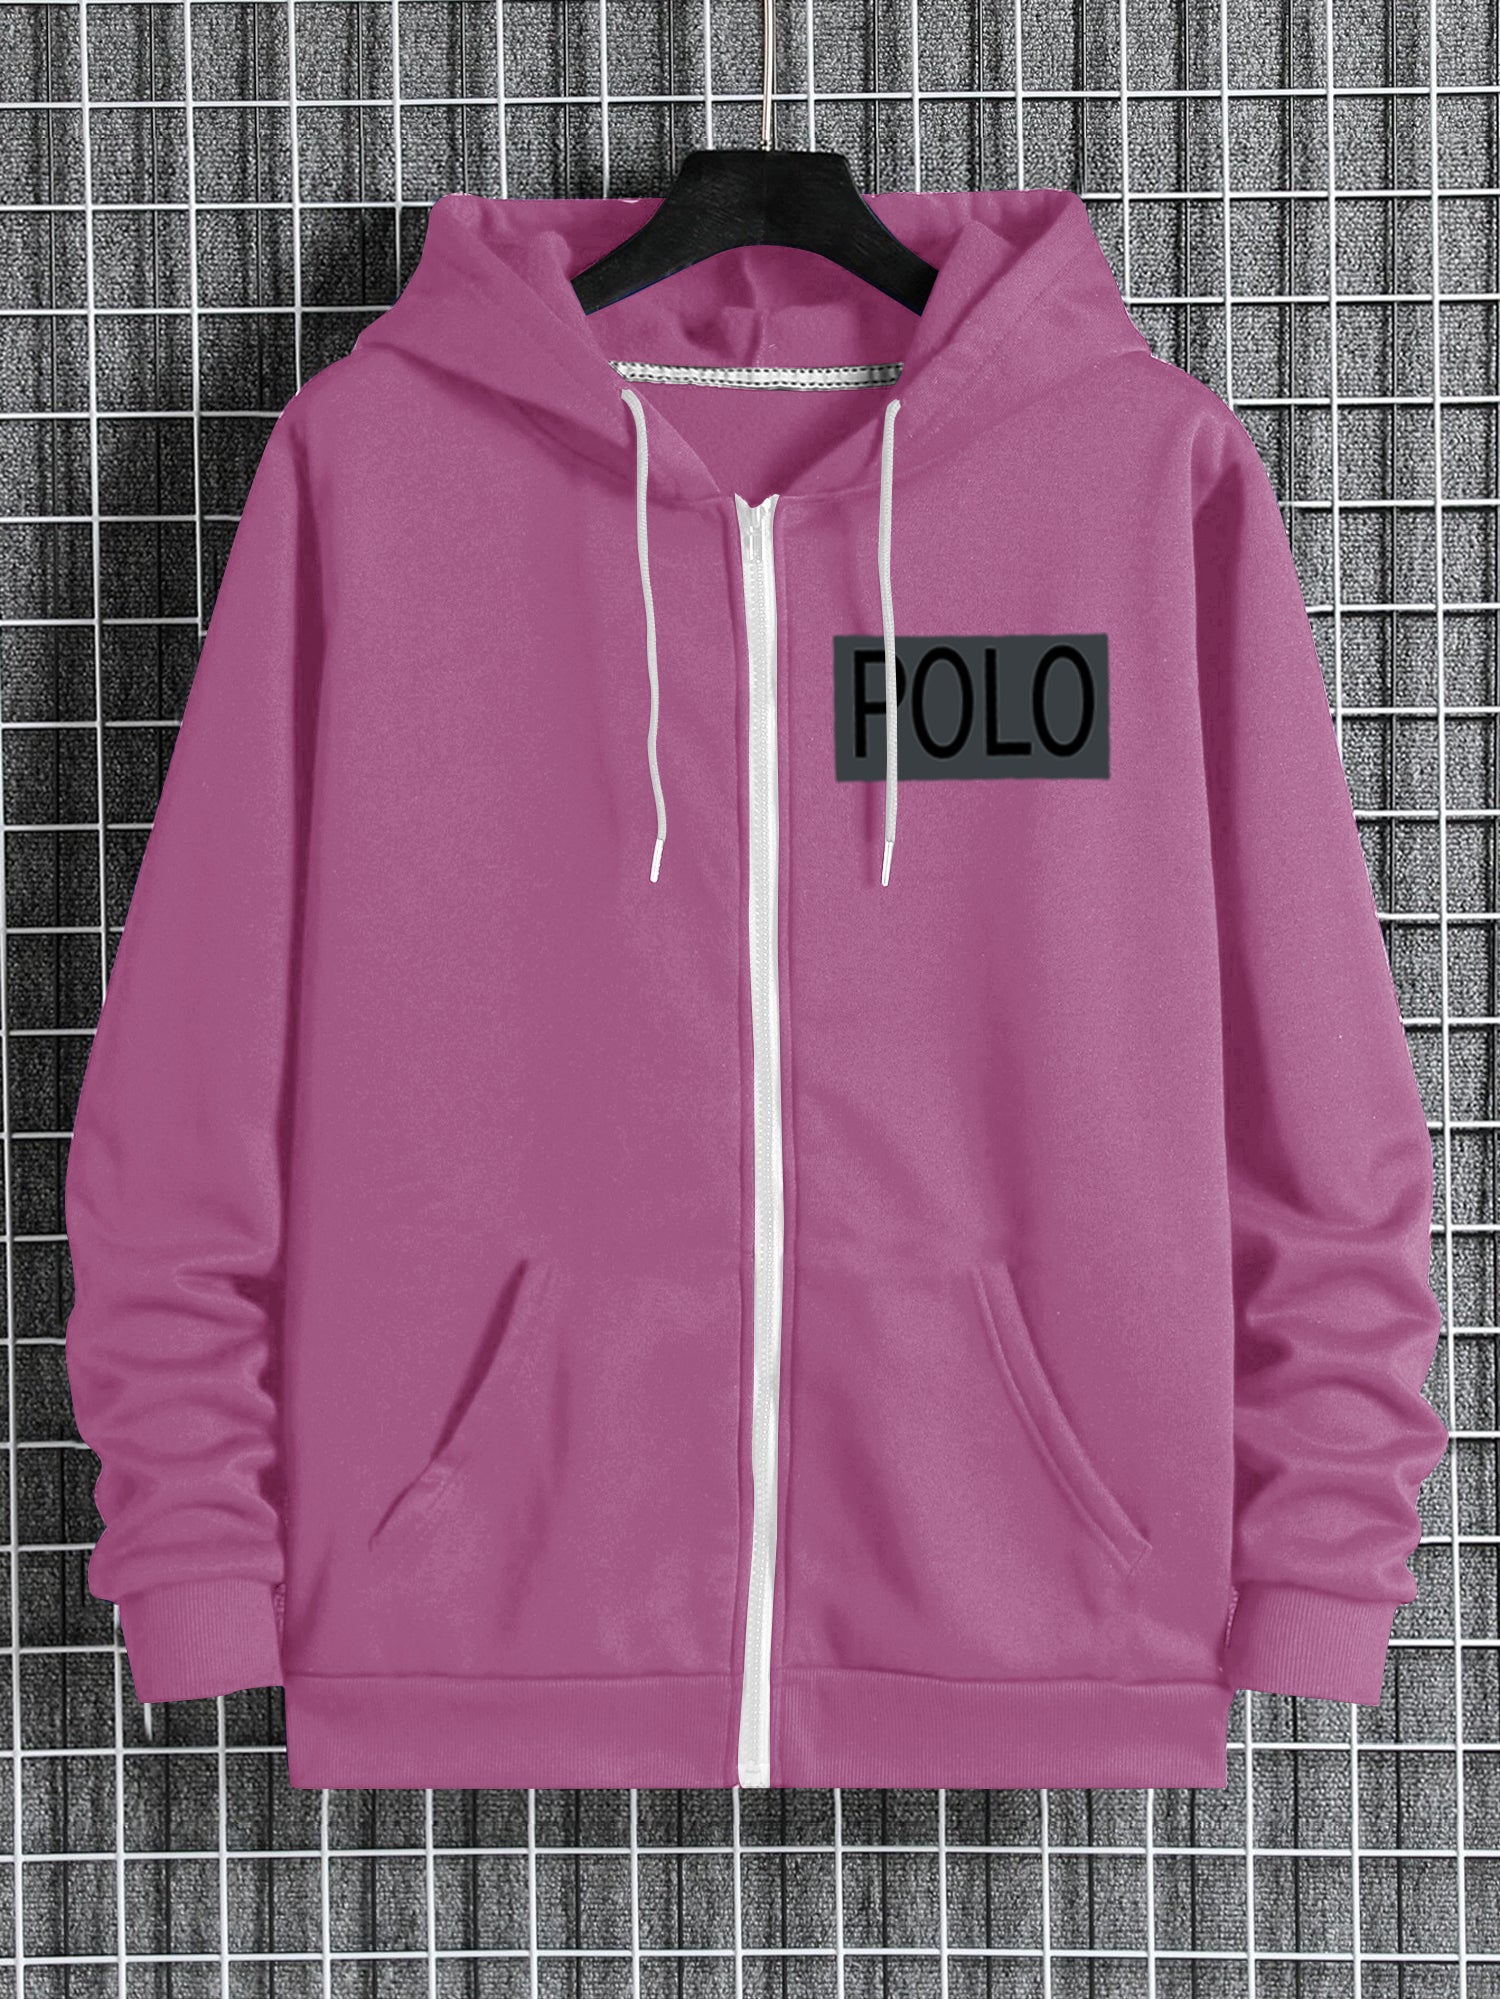 Nyc Polo Fleece Zipper Hoodie For Men-Pink-SP1411